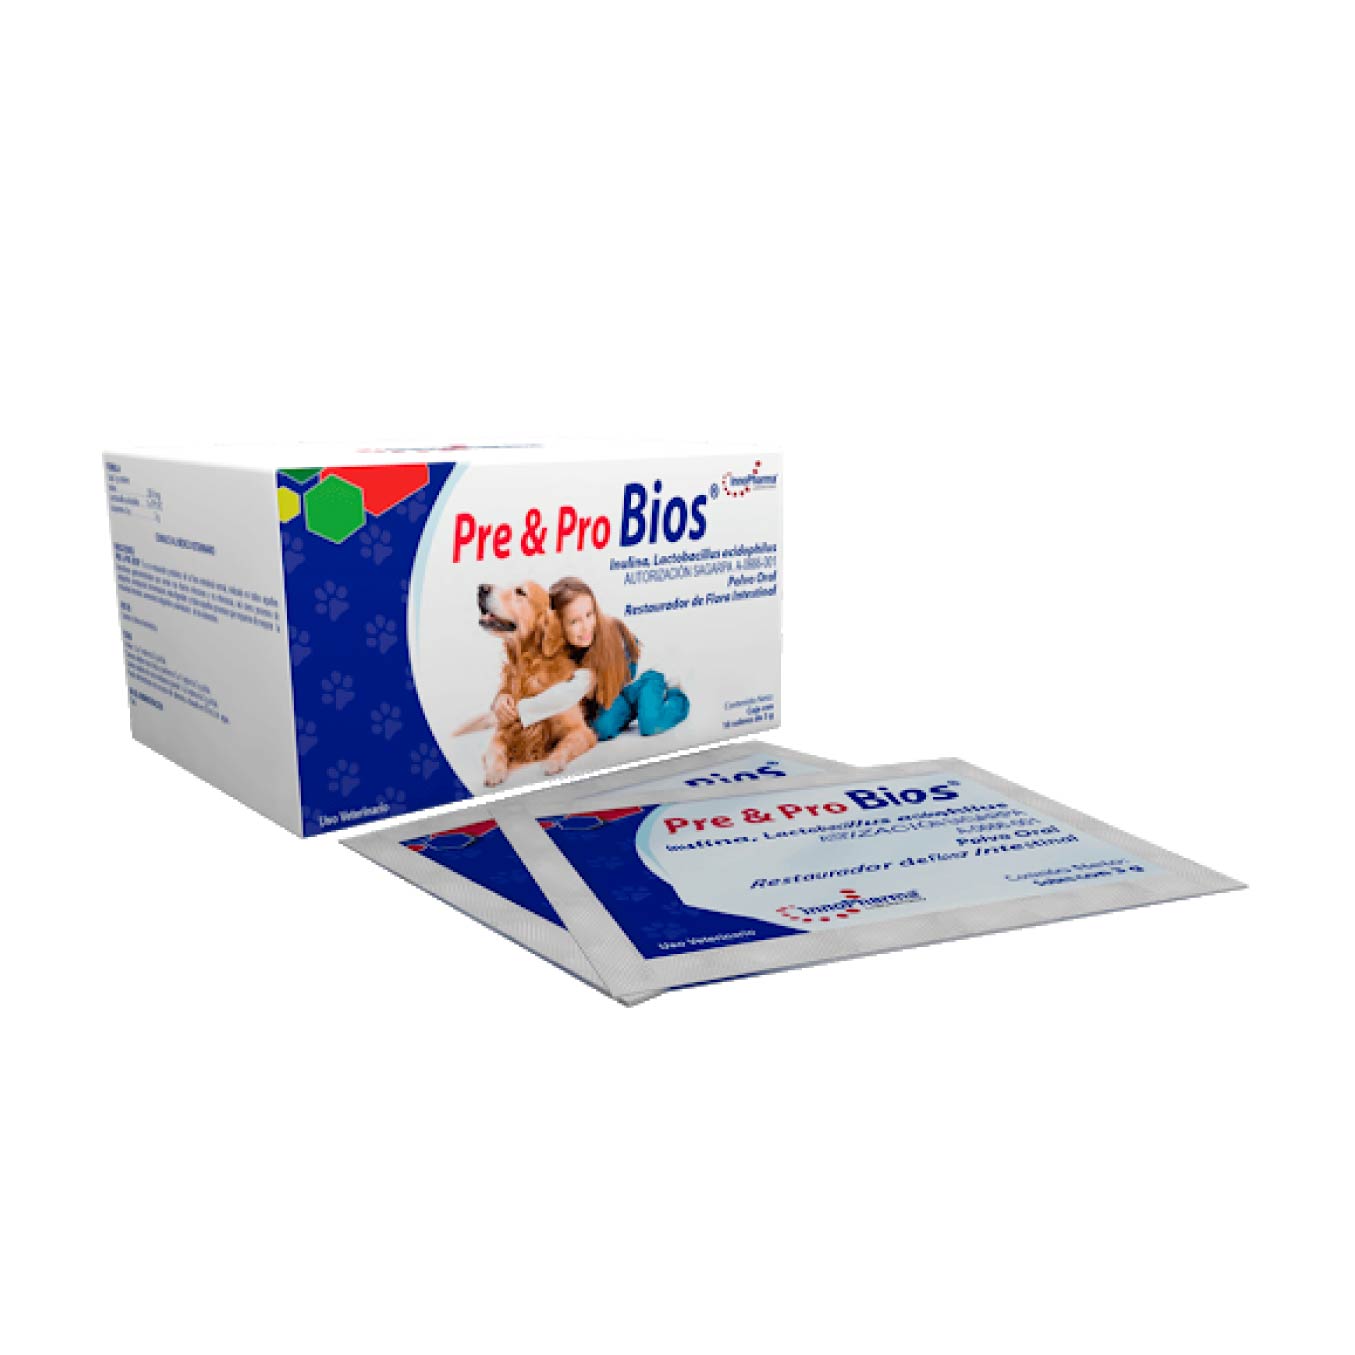 Pre & Pro Bios Pre y Probióticos  Polvo Oral - InnoPharma, Farmacia, InnoPharma, Mister Mascotas